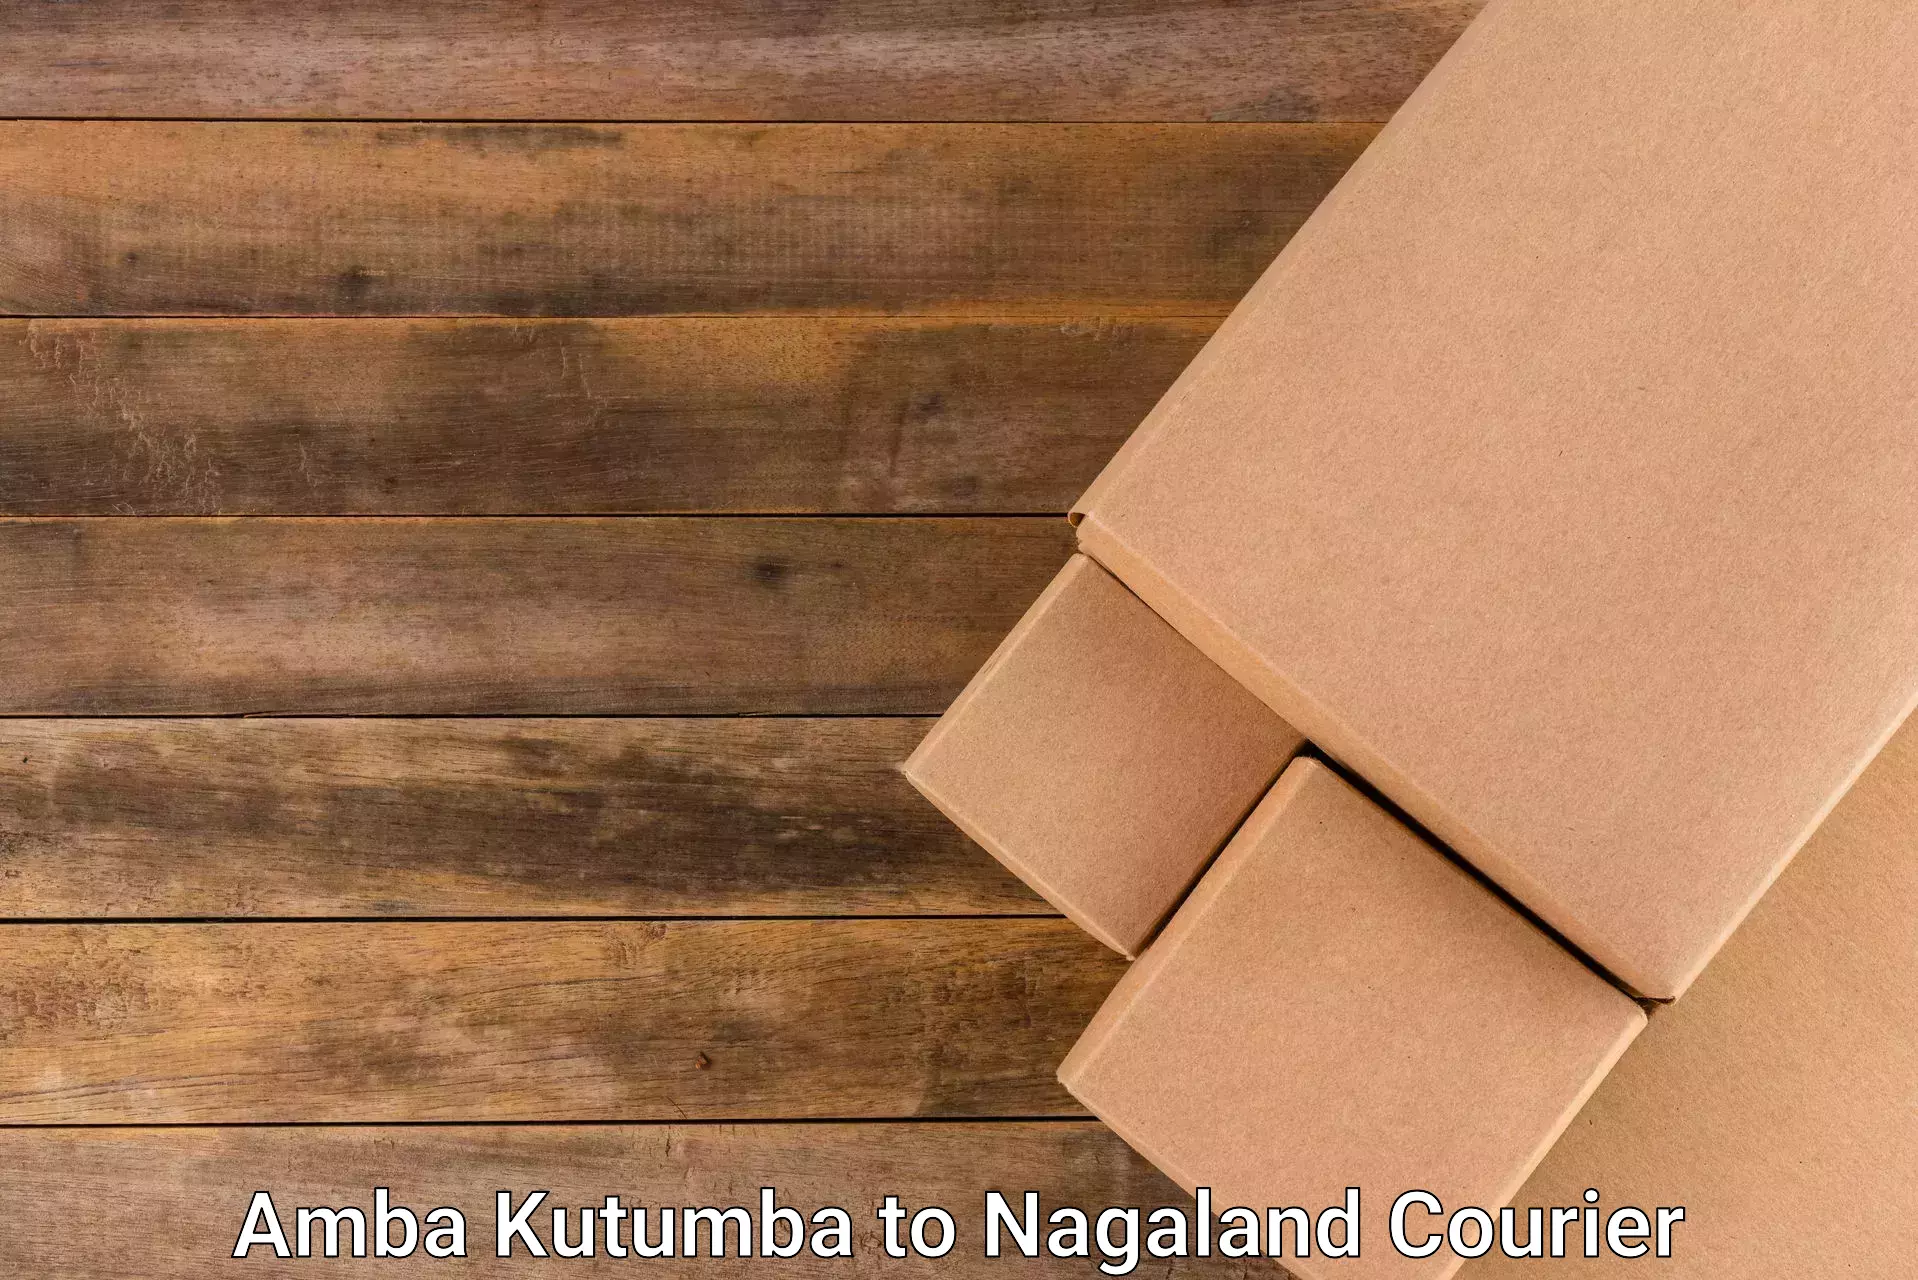 Advanced logistics management Amba Kutumba to Nagaland